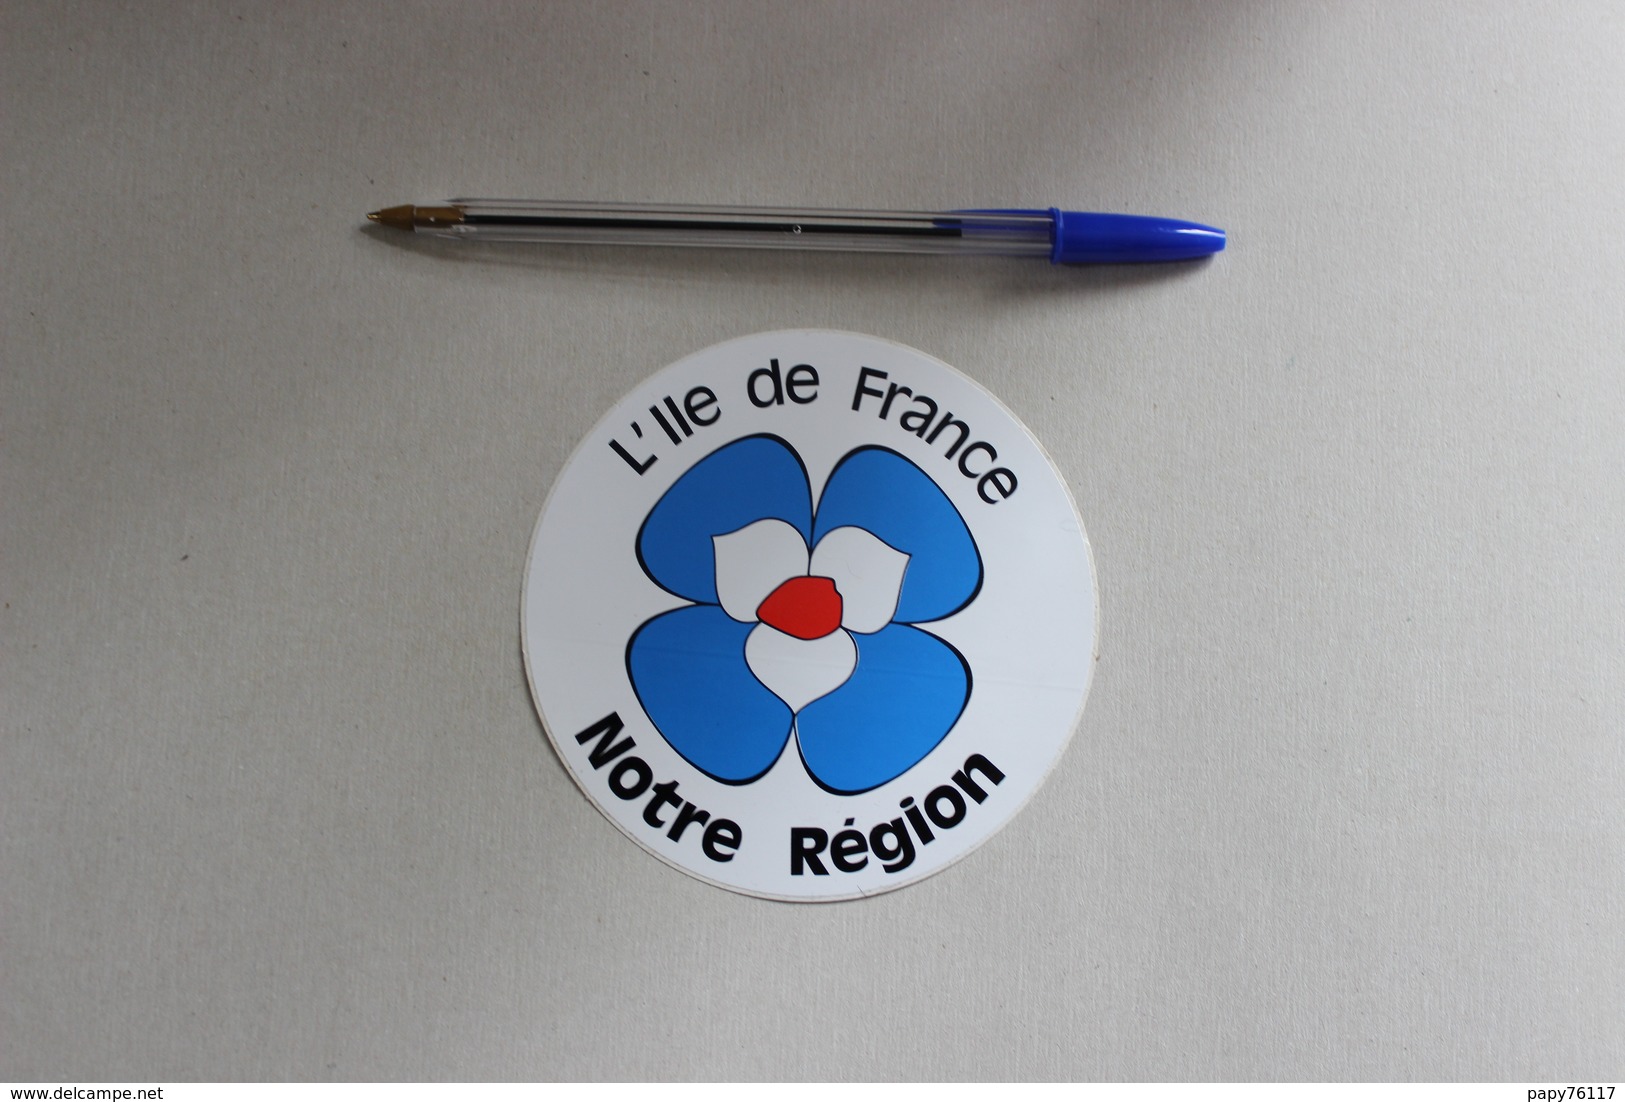 L ILE DE FRANCE NOTRE REGION  1 Autocollant - Stickers